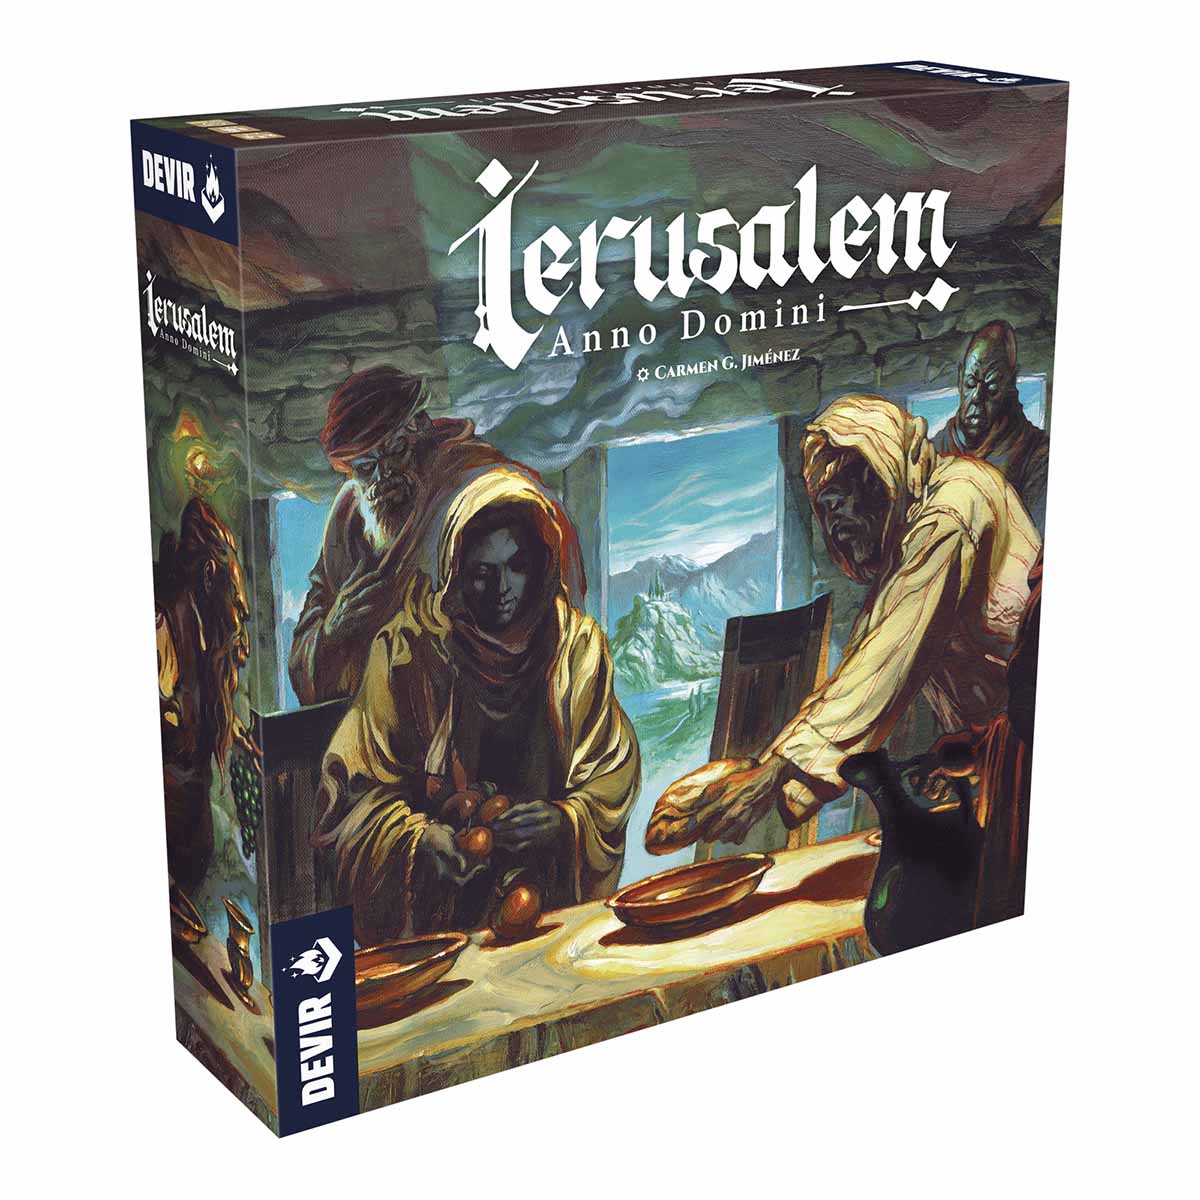 Ierusalem_1200x1200_box